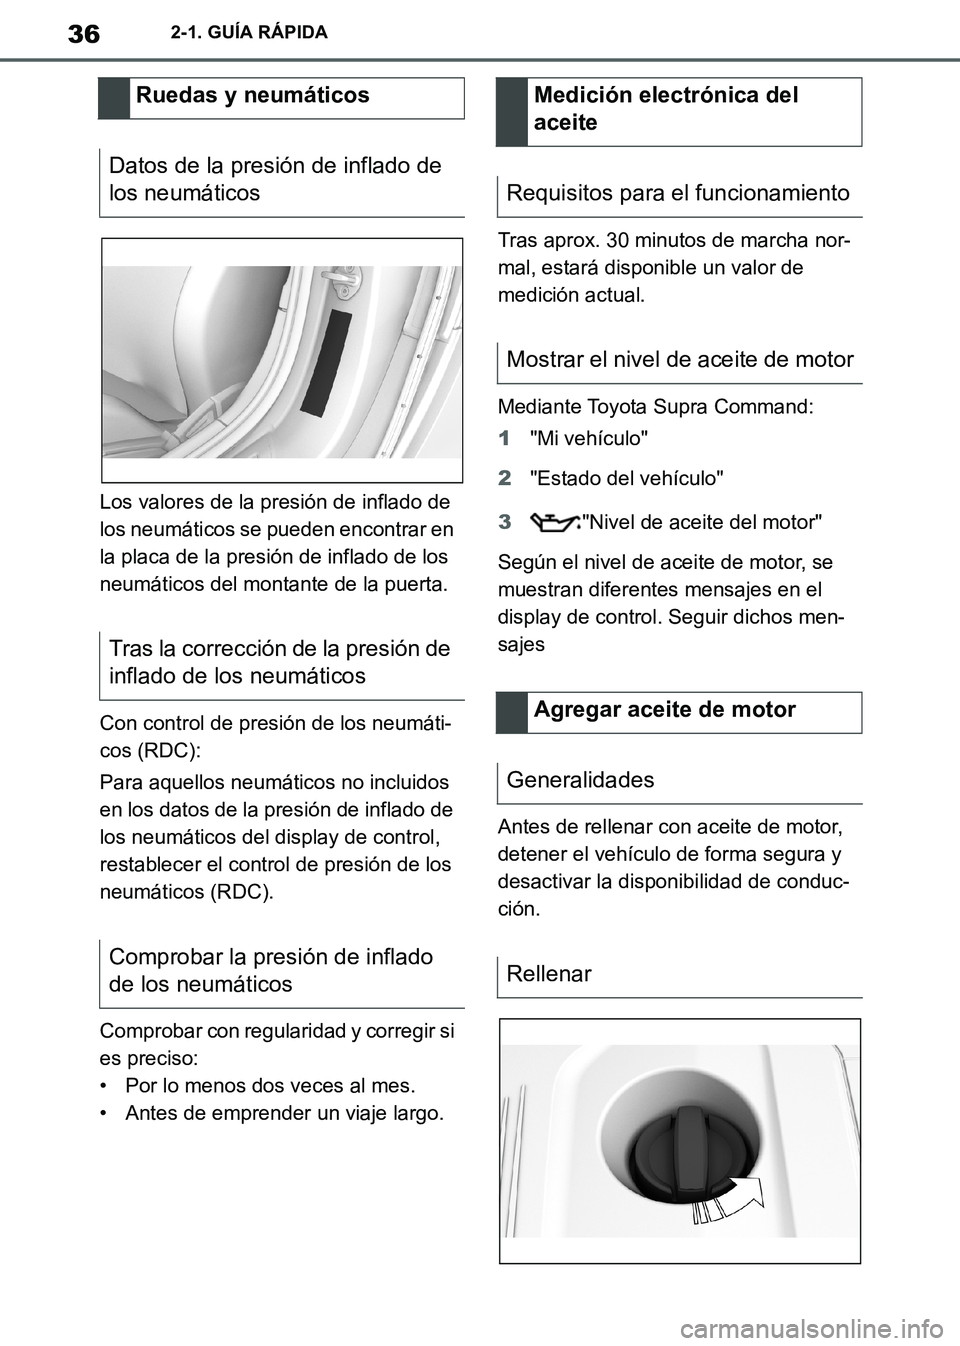 TOYOTA SUPRA 2019  Manuale de Empleo (in Spanish) 36
Supra Owners Manual_ES
2-1. GUÍA RÁPIDA
Los valores de la presión de inflado de 
los neumáticos se pueden encontrar en 
la placa de la presión de inflado de los 
neumáticos del montante de l